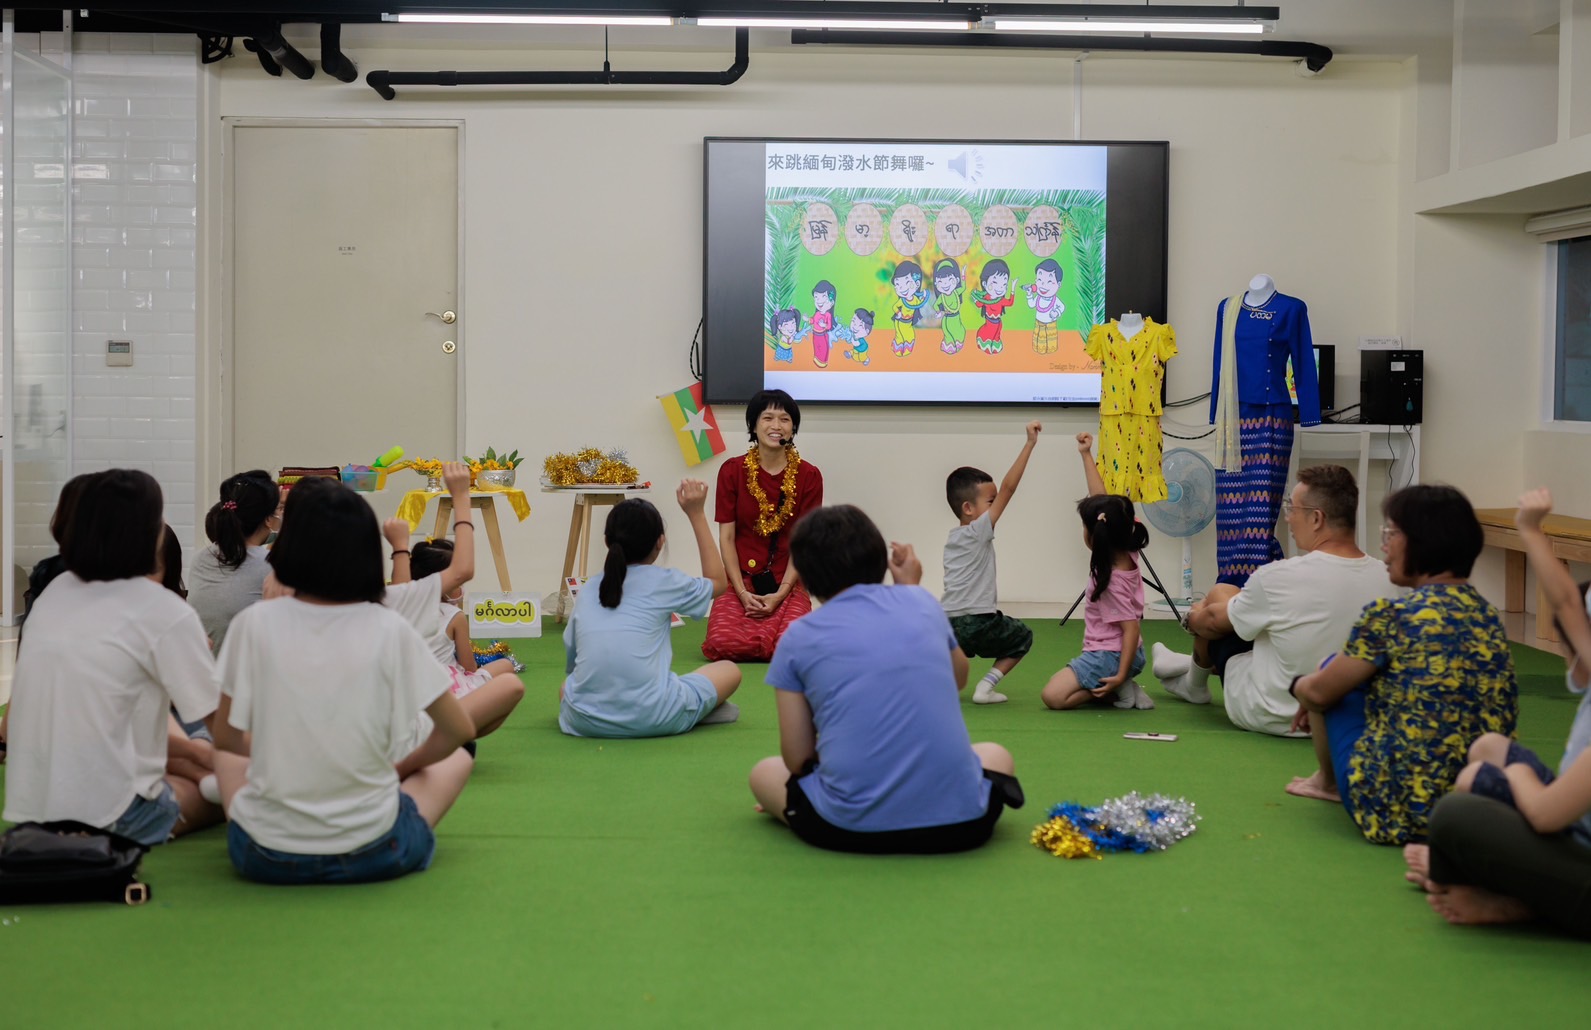 Trung tâm Nghiên cứu và Phát triển Thủ công Đài Loan giới thiệu một chuỗi hoạt động trải nghiệm, chia sẻ văn hóa tân di dân. (Ảnh: Trung tâm Nghiên cứu và Phát triển Thủ công Đài Loan)